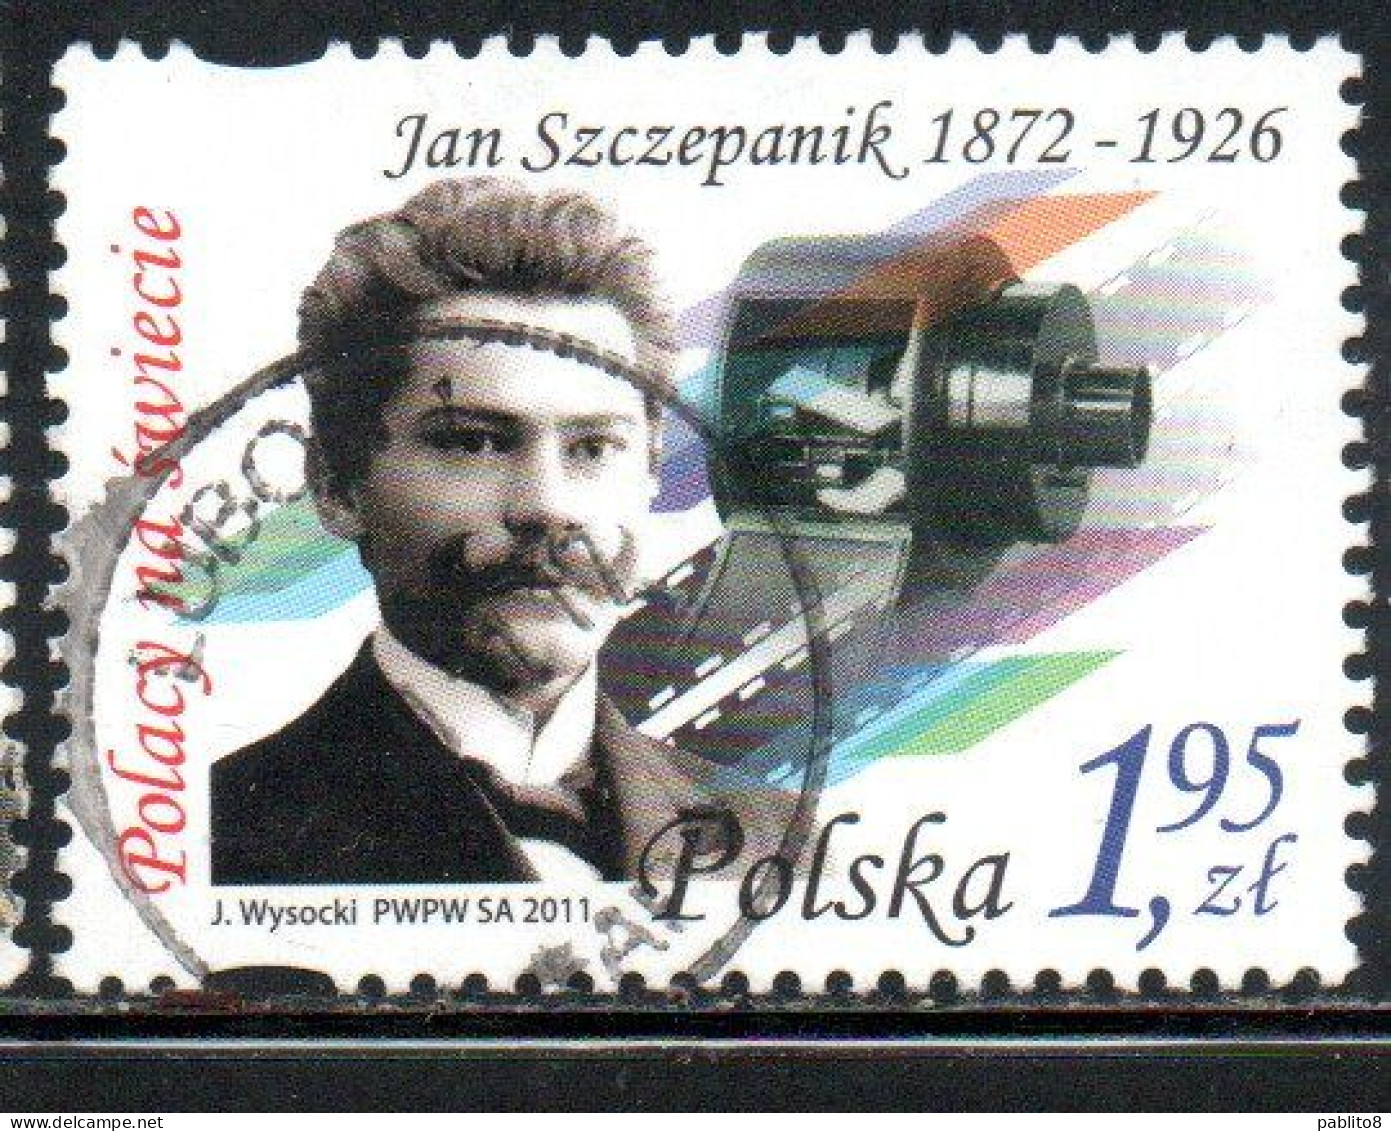 POLONIA POLAND POLSKA 2011 JAN SZCZEPANIK 1.95z USED USATO OBLITERE' - Used Stamps